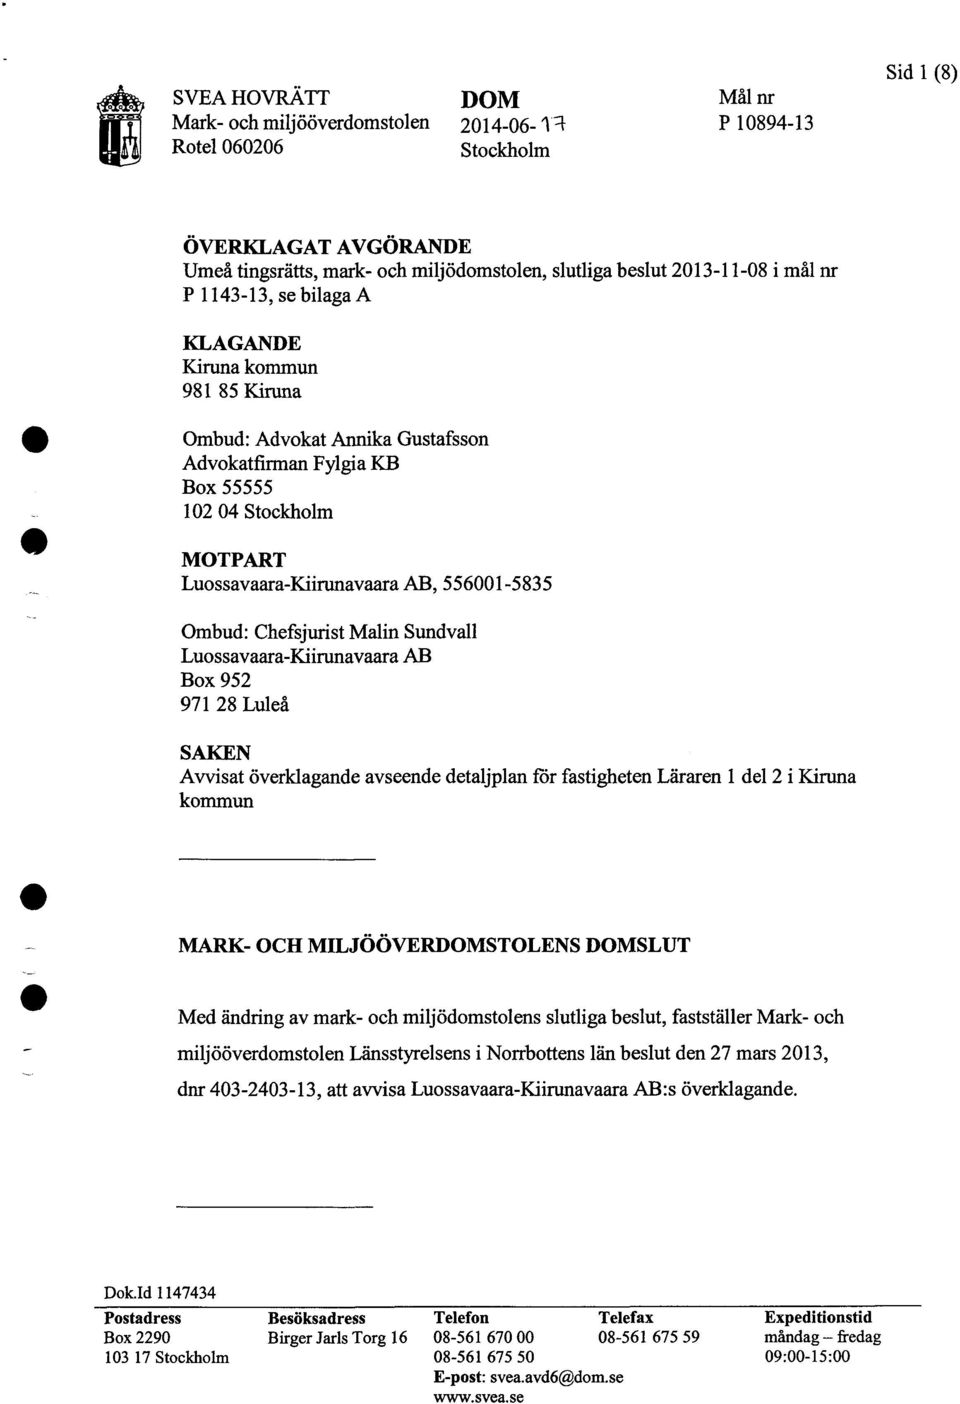 Ombud: Chefsjurist Malin Sundvall Luossavaara-Kiirunavaara AB Box 952 971 28 Luleå SAKEN Avvisat överklagande avseende detaljplan för fastigheten Läraren l del 2 i Kiruna kommun MARK- OCH